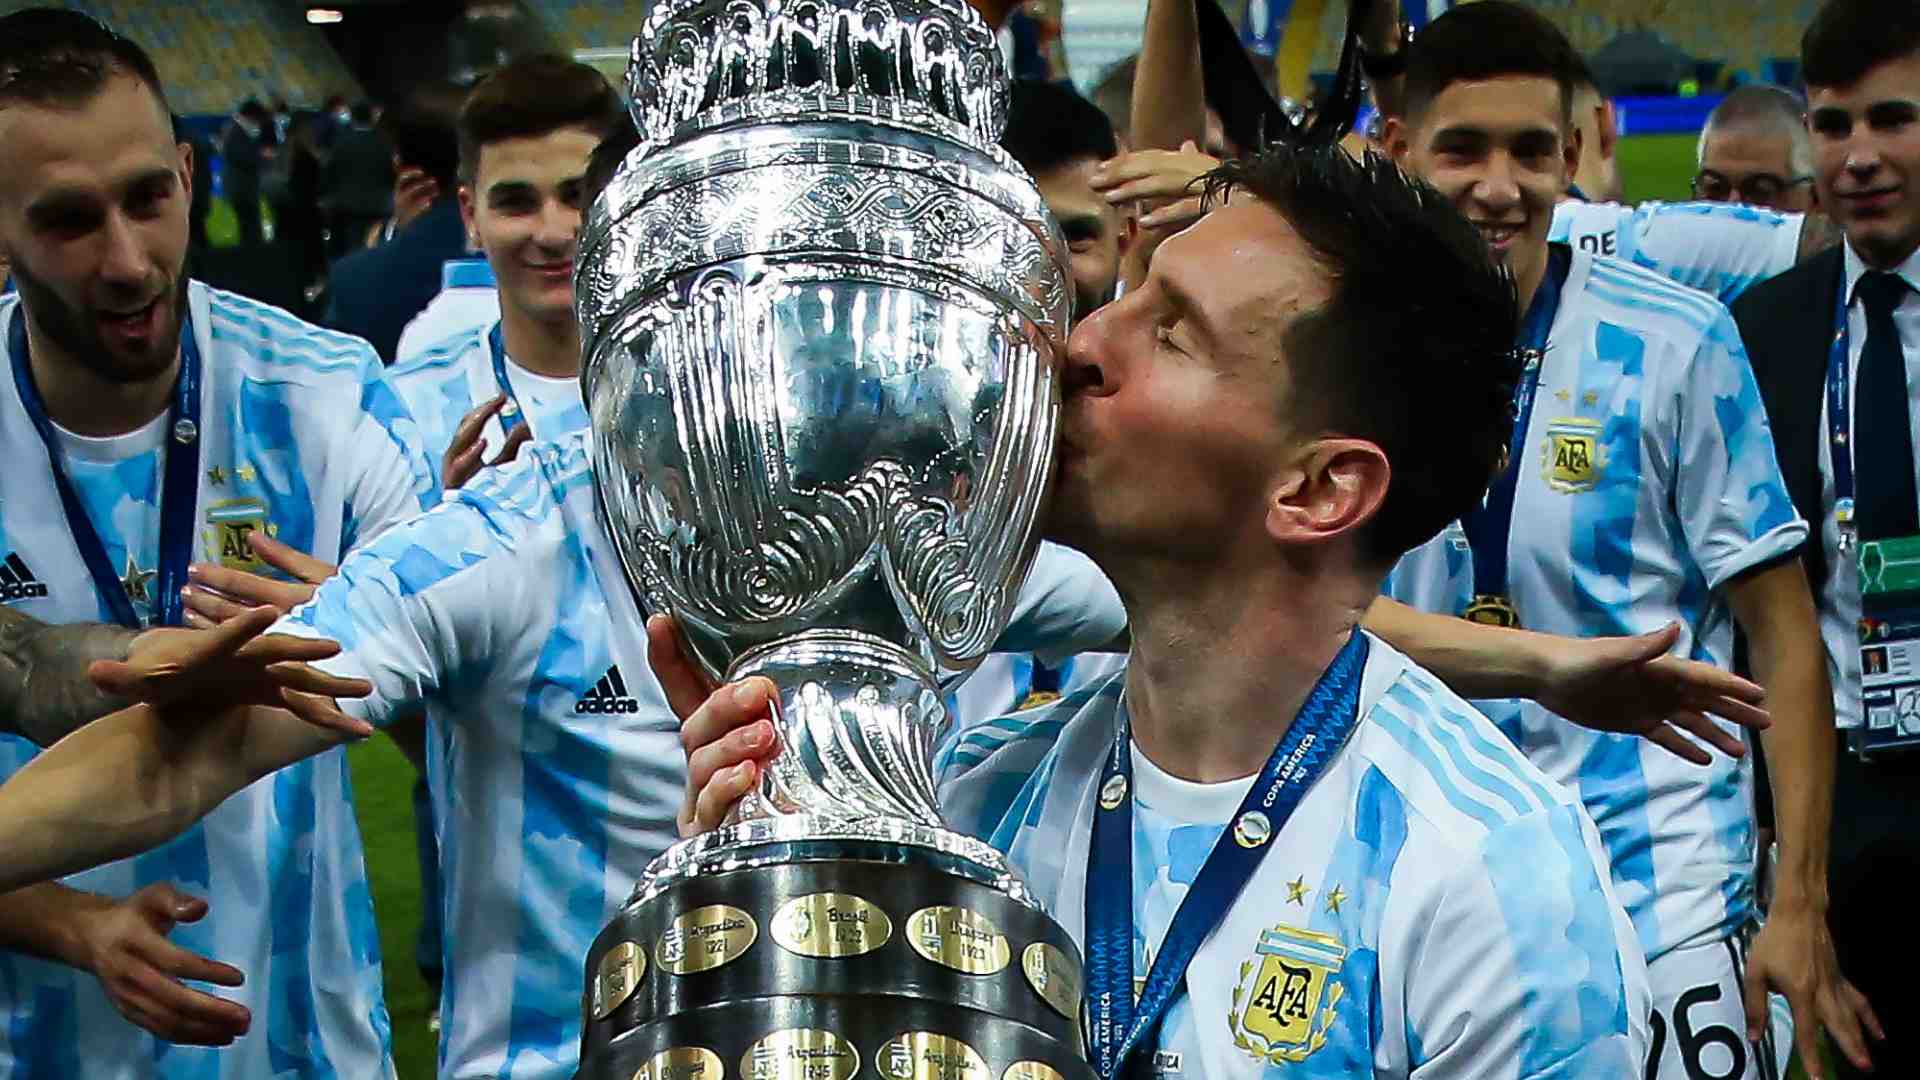 Đội tuyển Argentina của Lionel Messi đã thăng hoa trong Giải bóng đá Copa America năm nay và chính thức chinh phục danh hiệu vô địch quốc gia lâu đài. Hãy xem hình ảnh ấn tượng của giải đấu này và cùng chúc mừng đội tuyển Argentina!